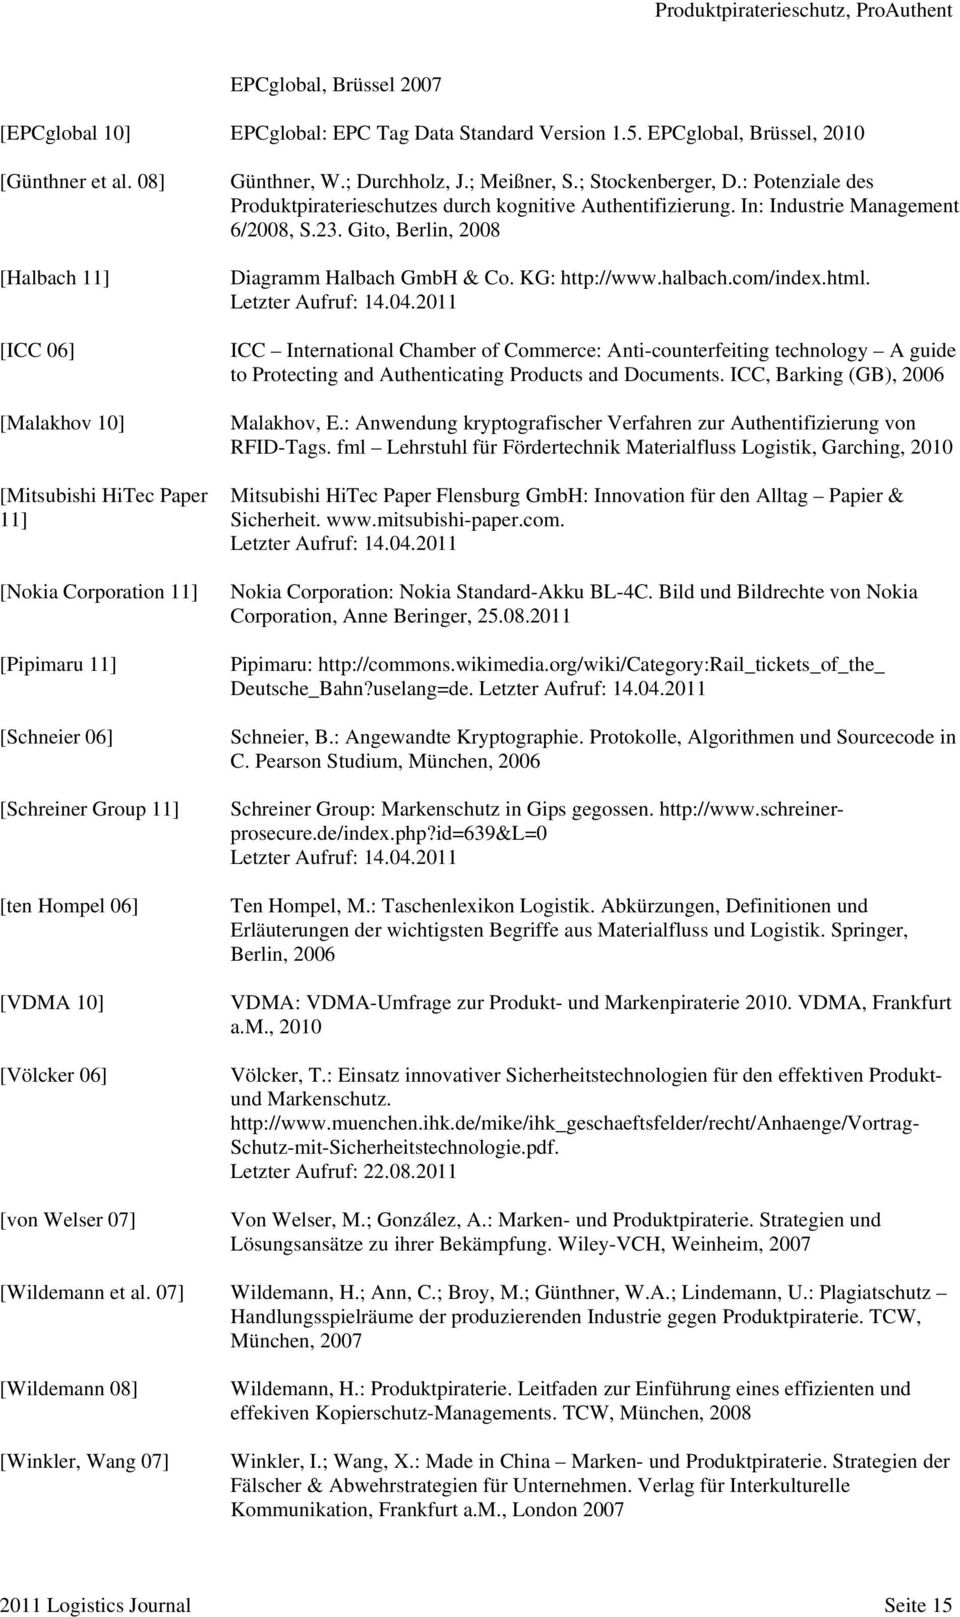 Günthner, W.; Durchholz, J.; Meißner, S.; Stockenberger, D.: Potenziale des Produktpiraterieschutzes durch kognitive Authentifizierung. In: Industrie Management 6/2008, S.23.